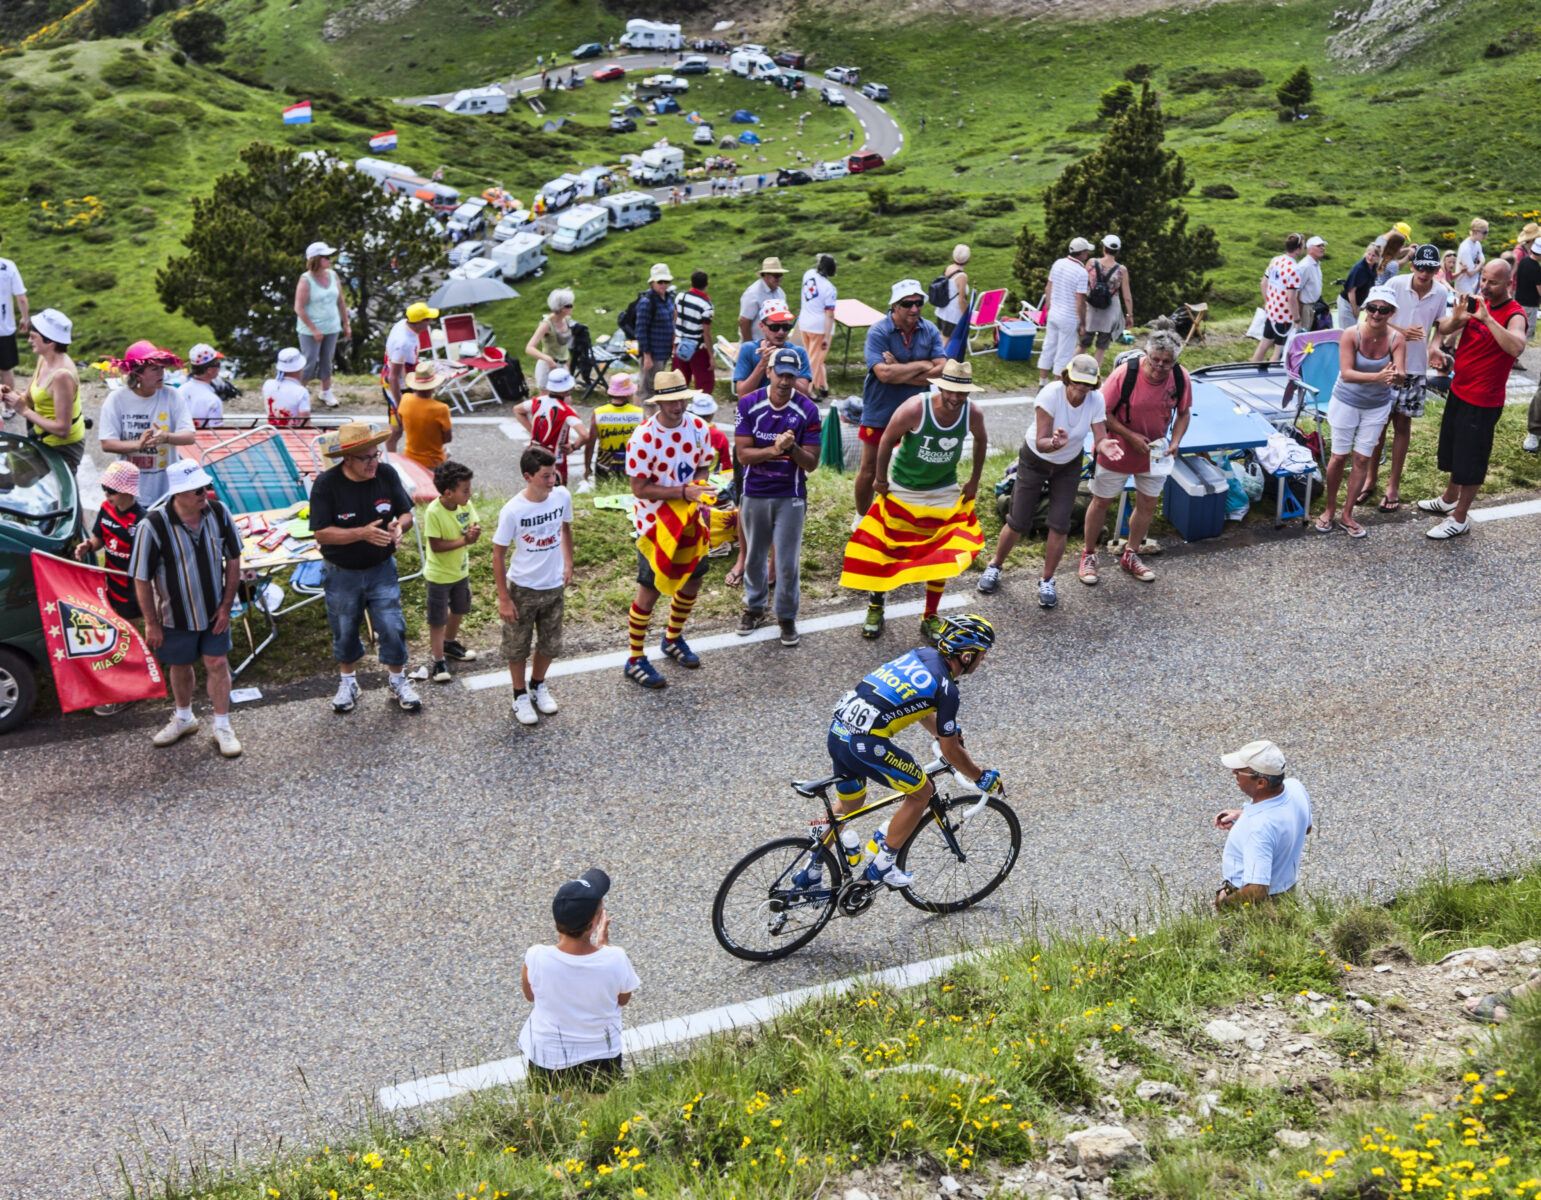 Sergio Paulinho, Tour de France